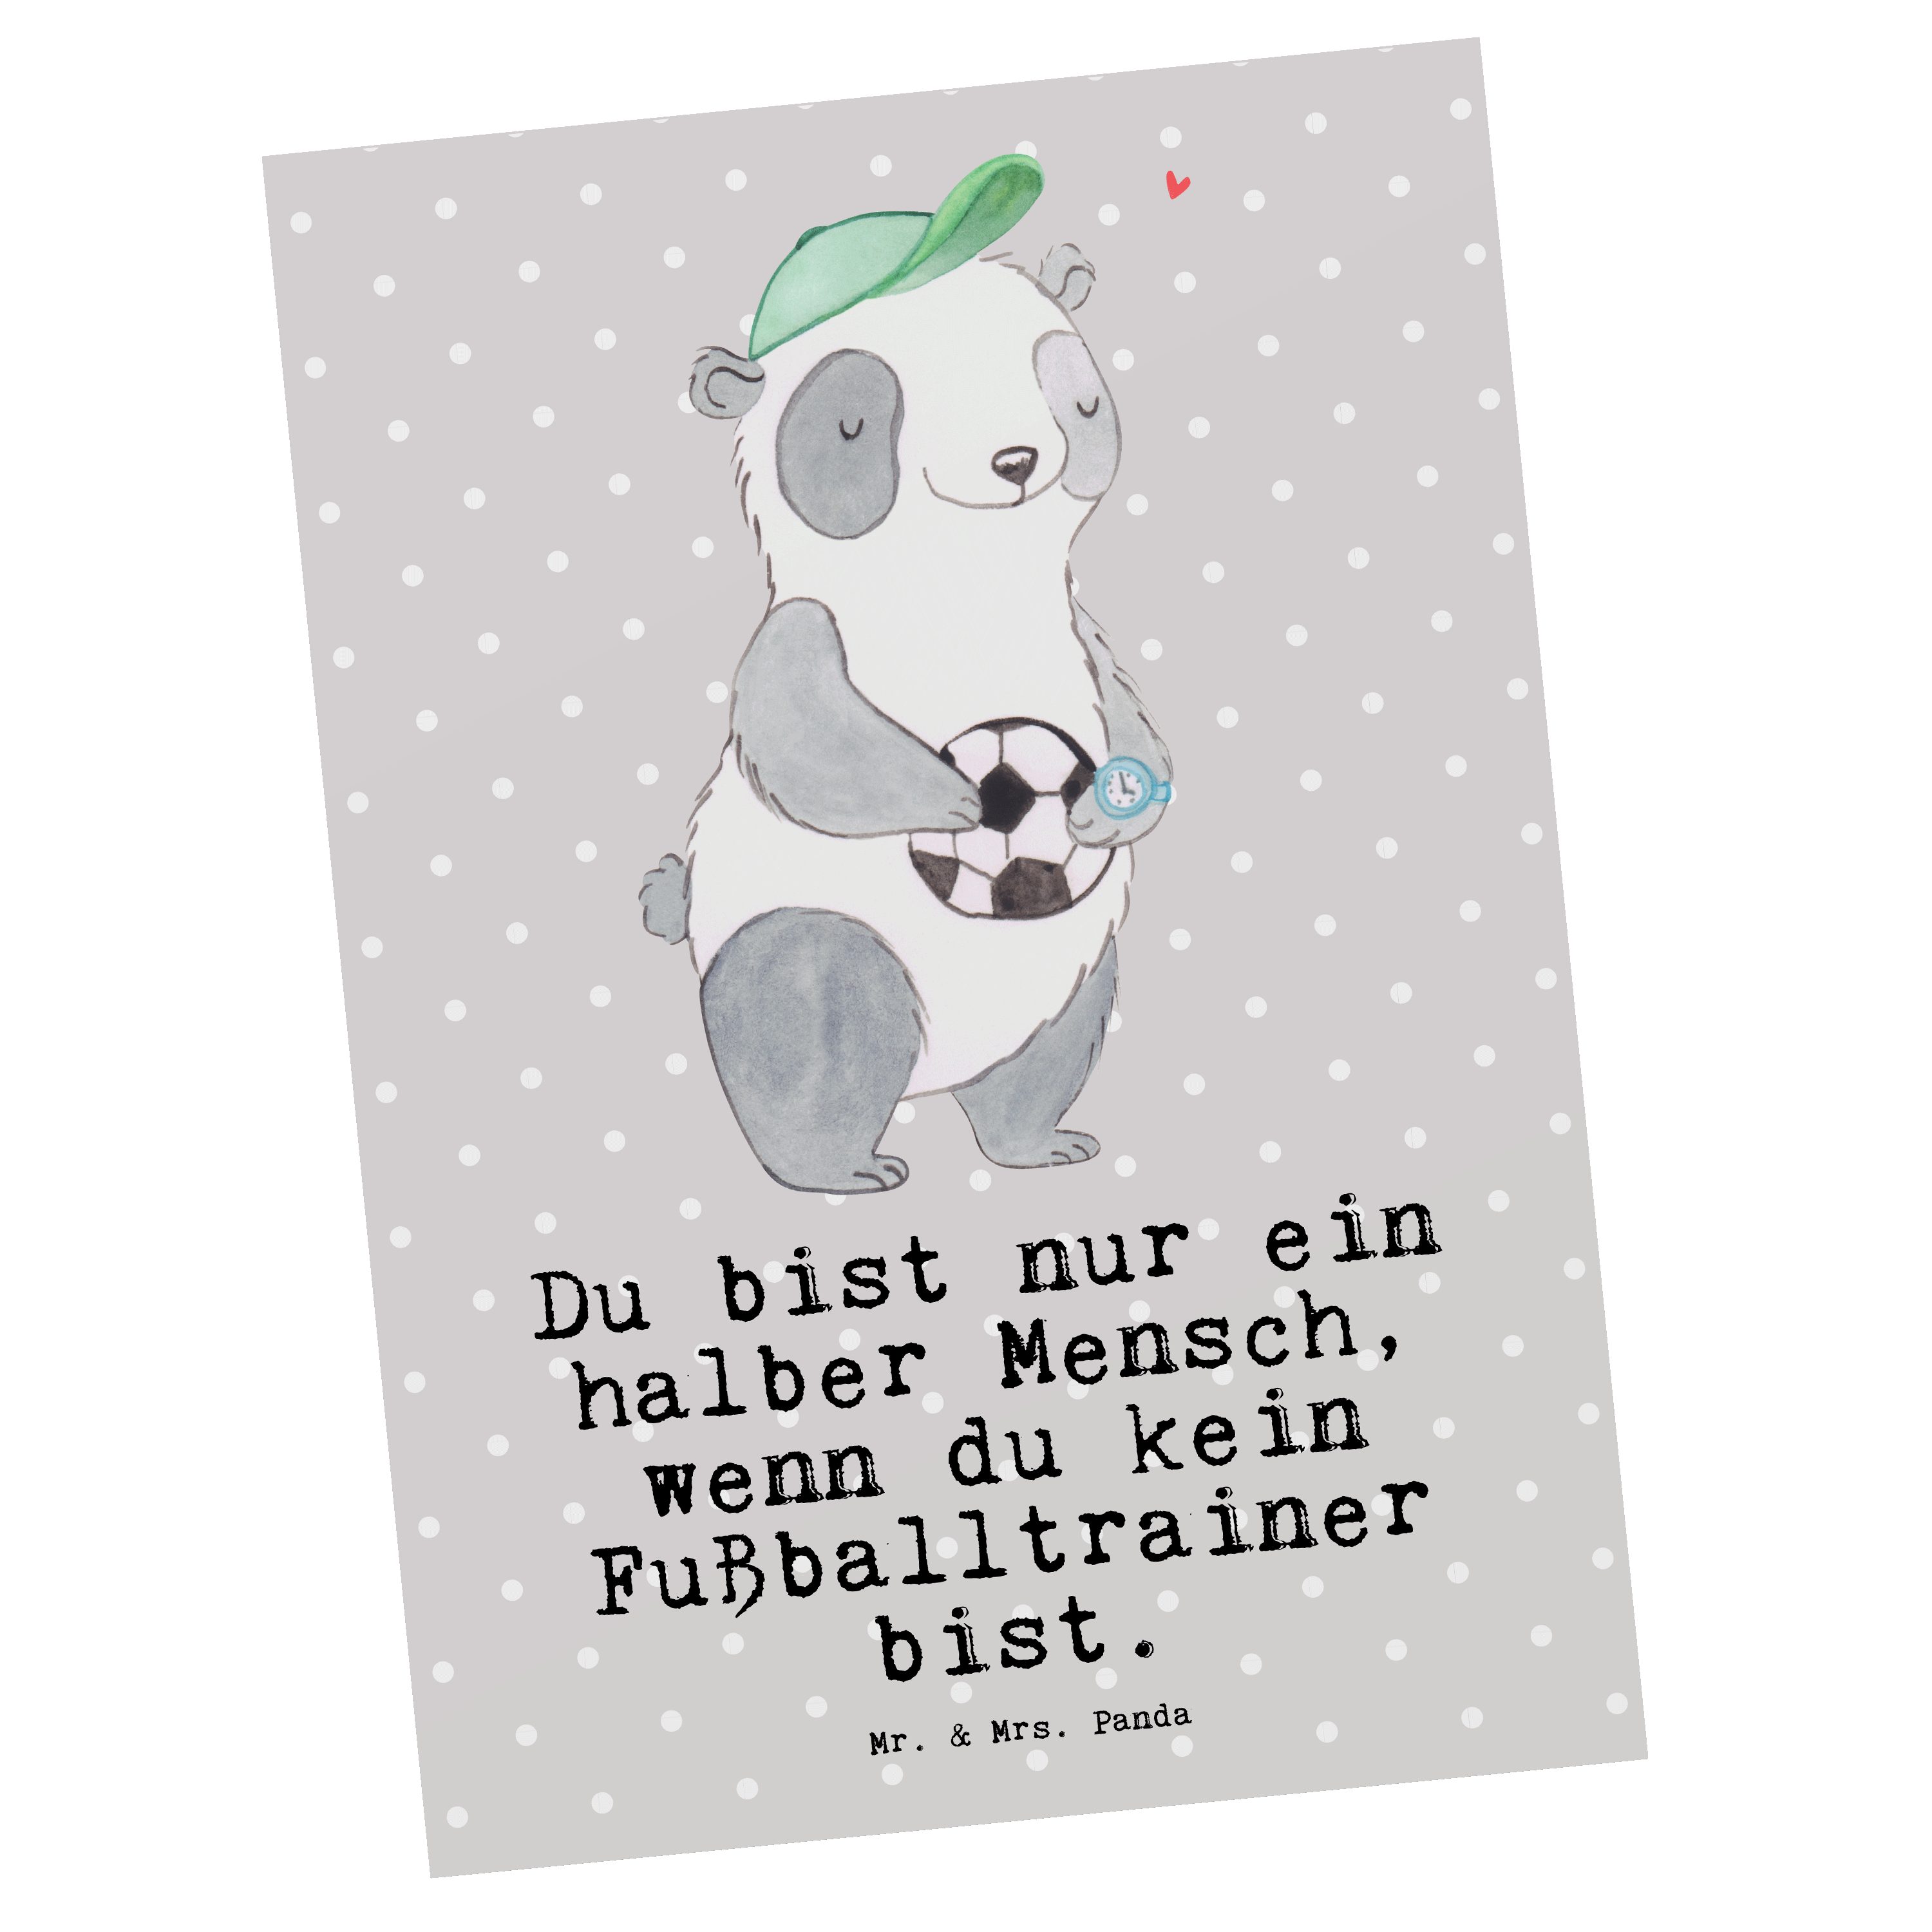 Mr. & Mrs. Panda Postkarte Fußballtrainer mit Herz - Grau Pastell - Geschenk, Fußballspiel, Dank